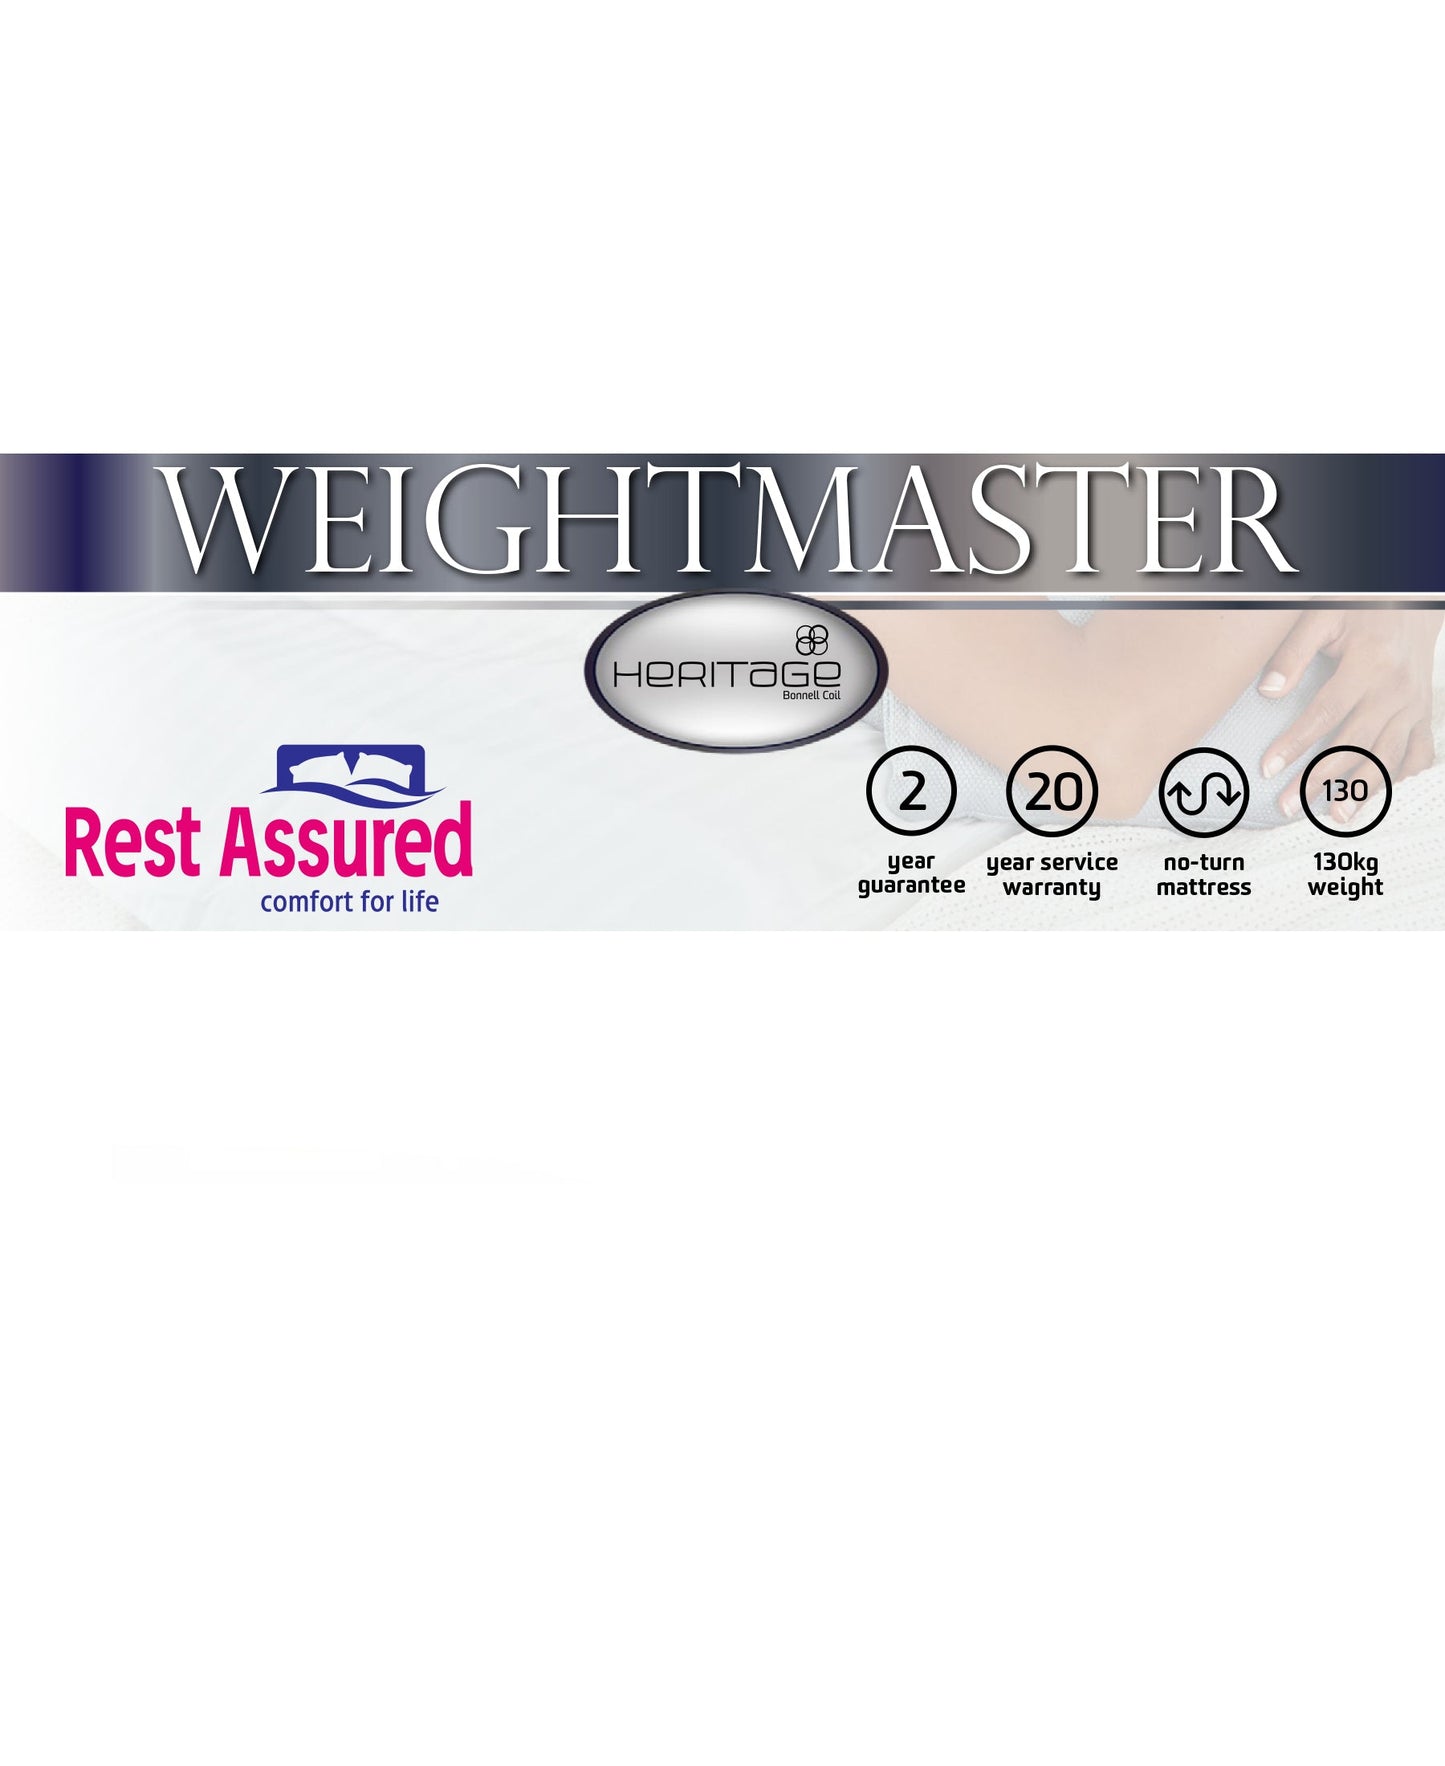 Rest Assured Weightmaster Bed Queen